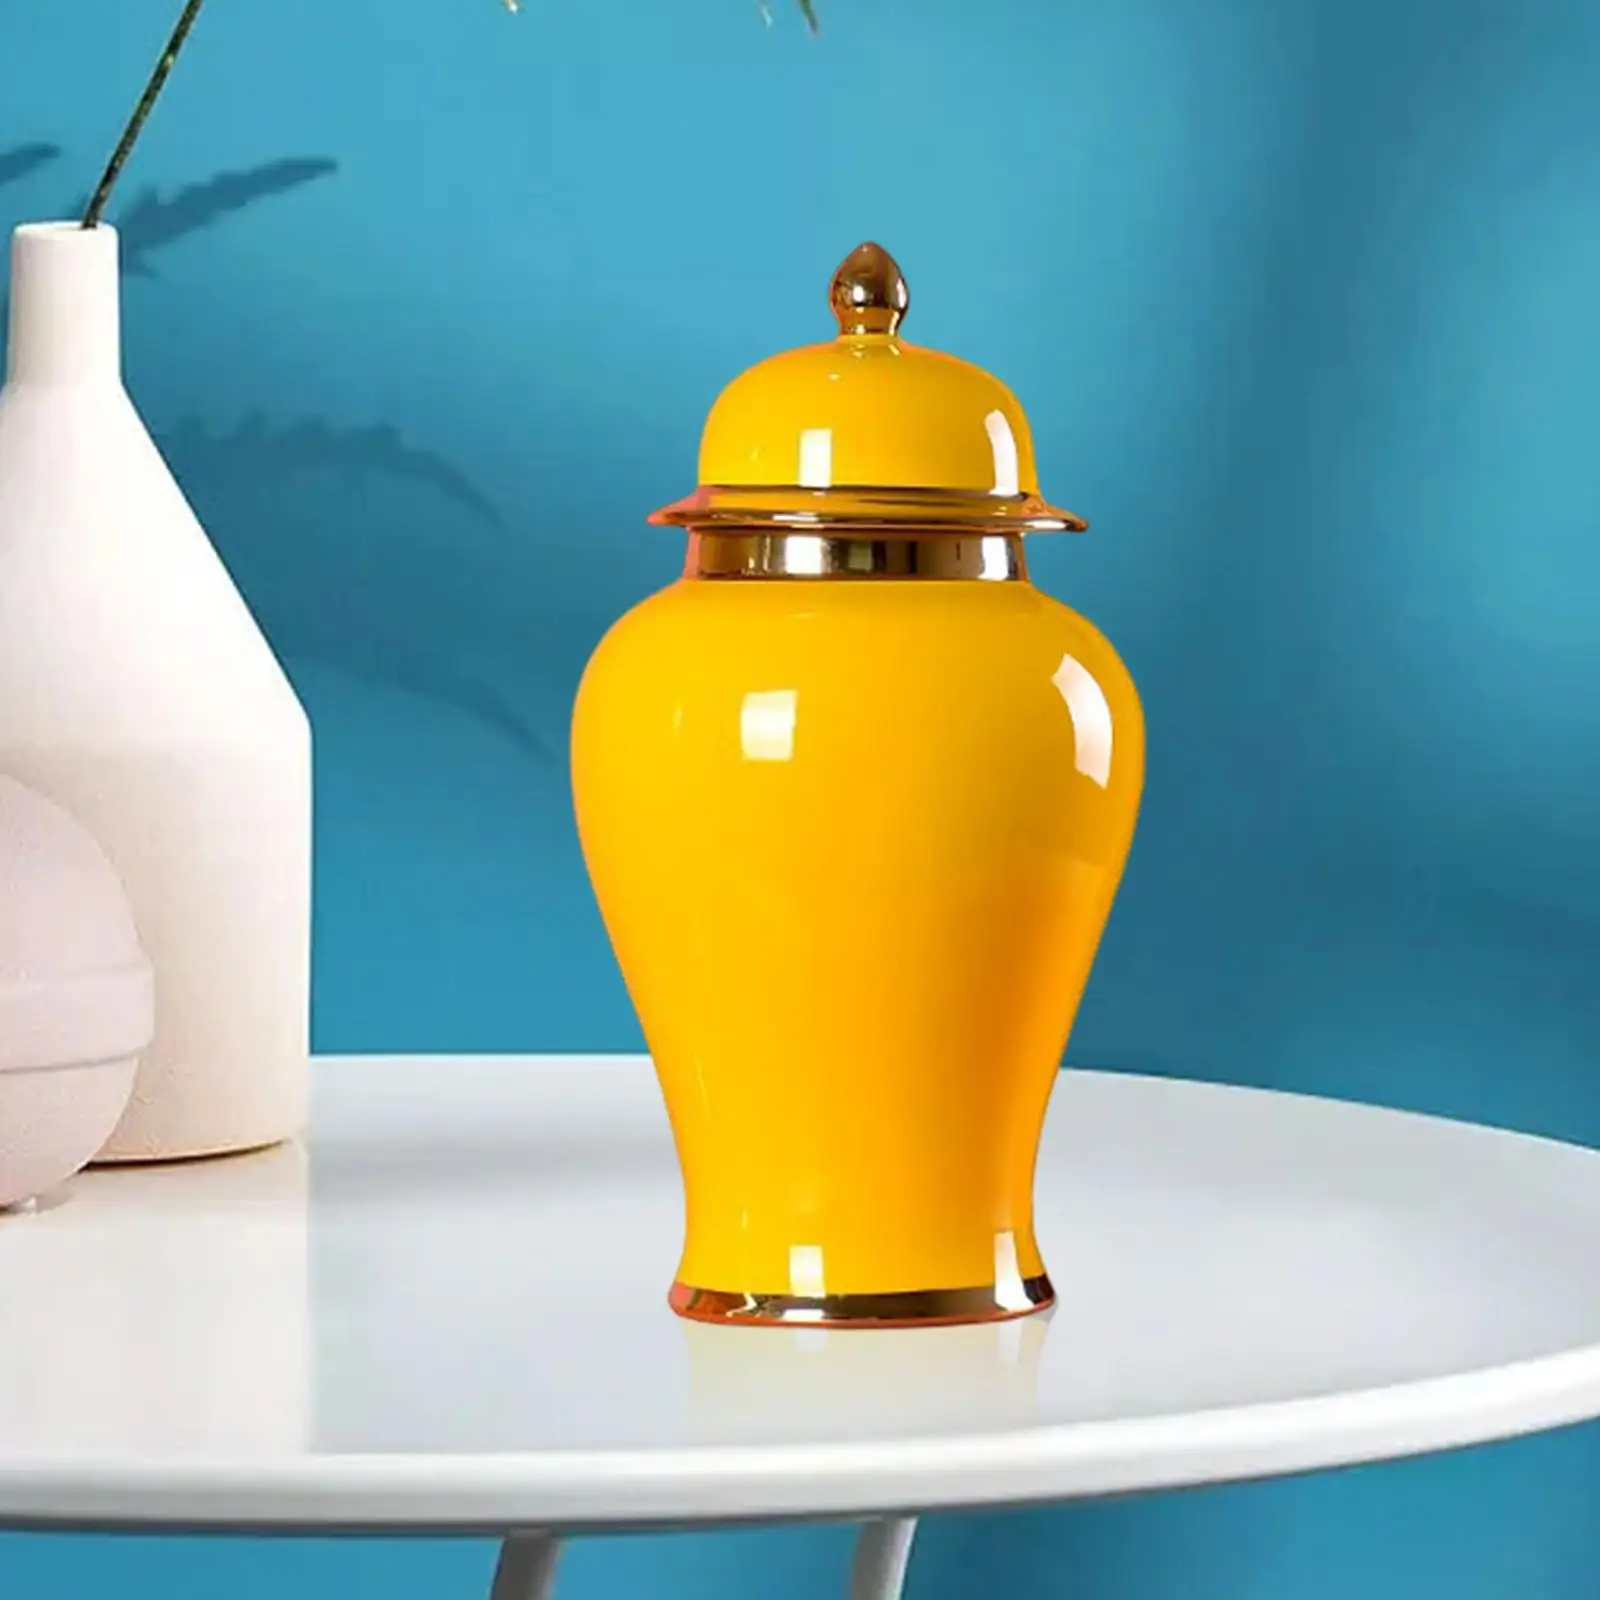 Statues Ceramic Vase Storage Organizer Porcelain Ginger Jar for Living Room